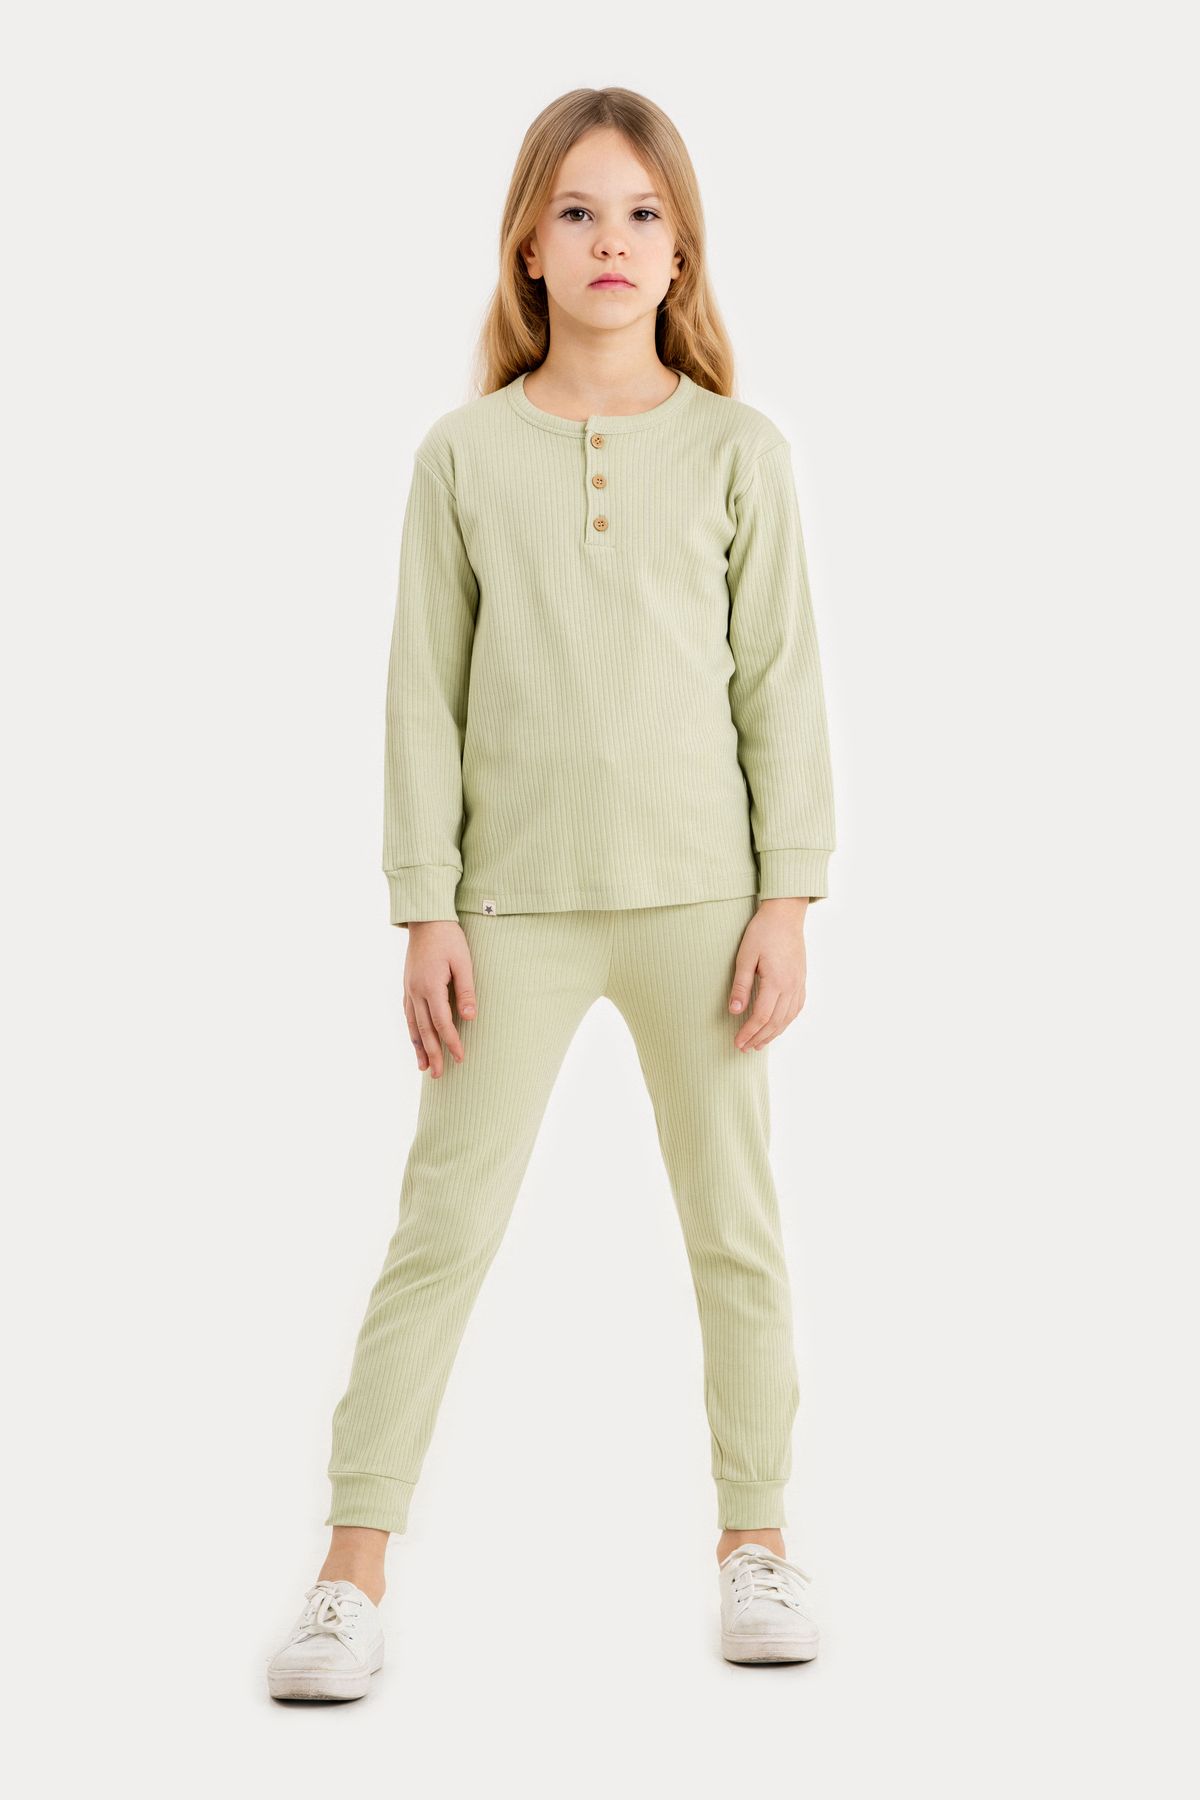 Irmak kids Çizgili İnterlok Su Yeşili Unisex Çocuk Pijaması